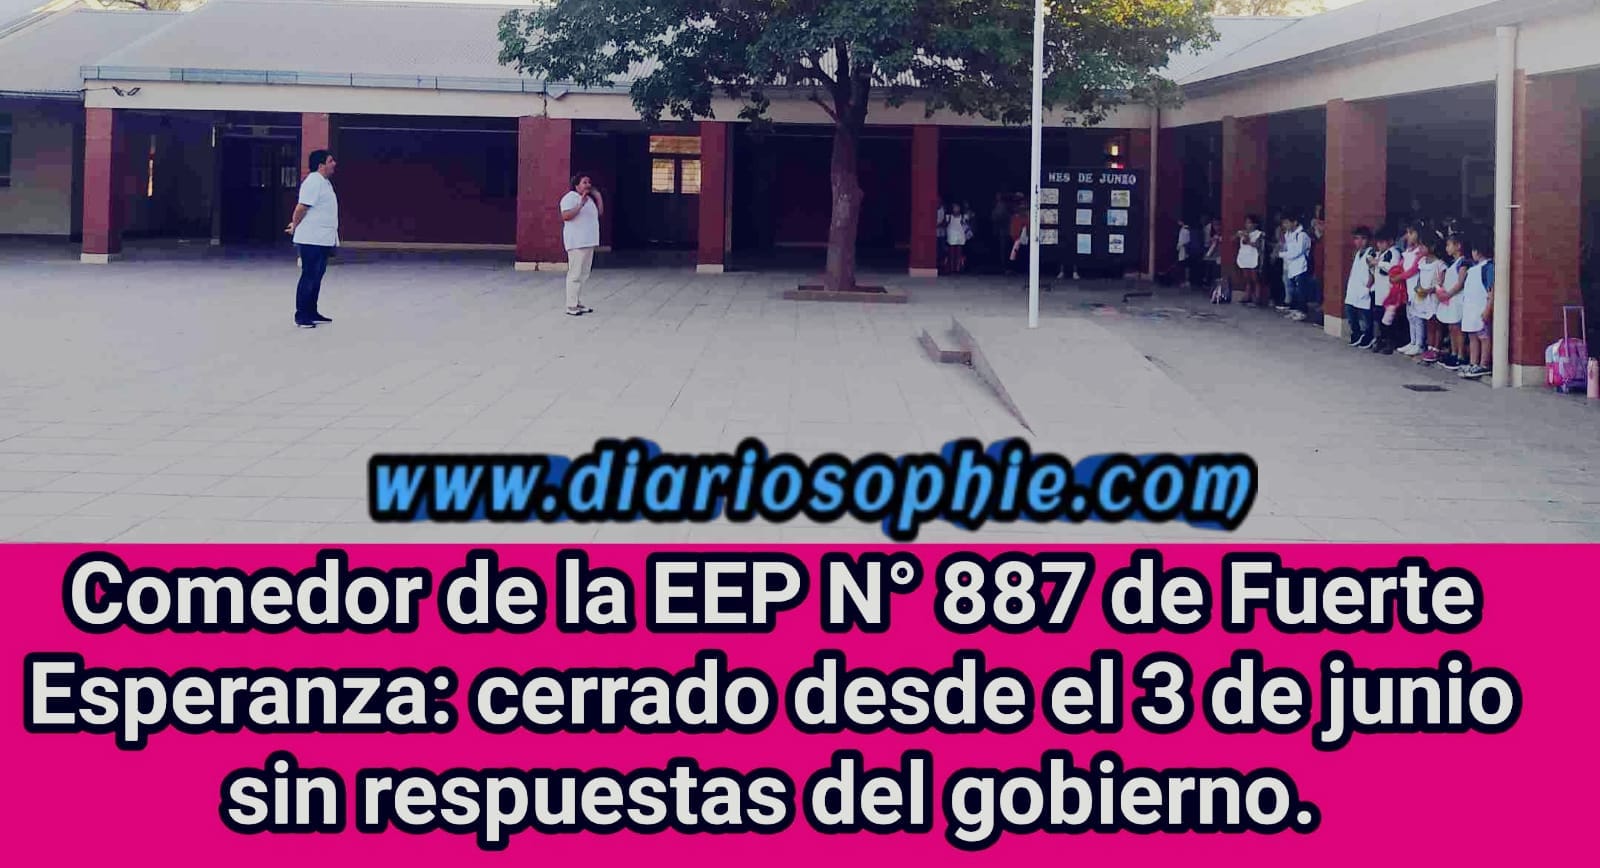 Comedor de la EEP N° 887 de Fuerte Esperanza: cerrado desde el 3 de junio sin respuestas del gobierno.